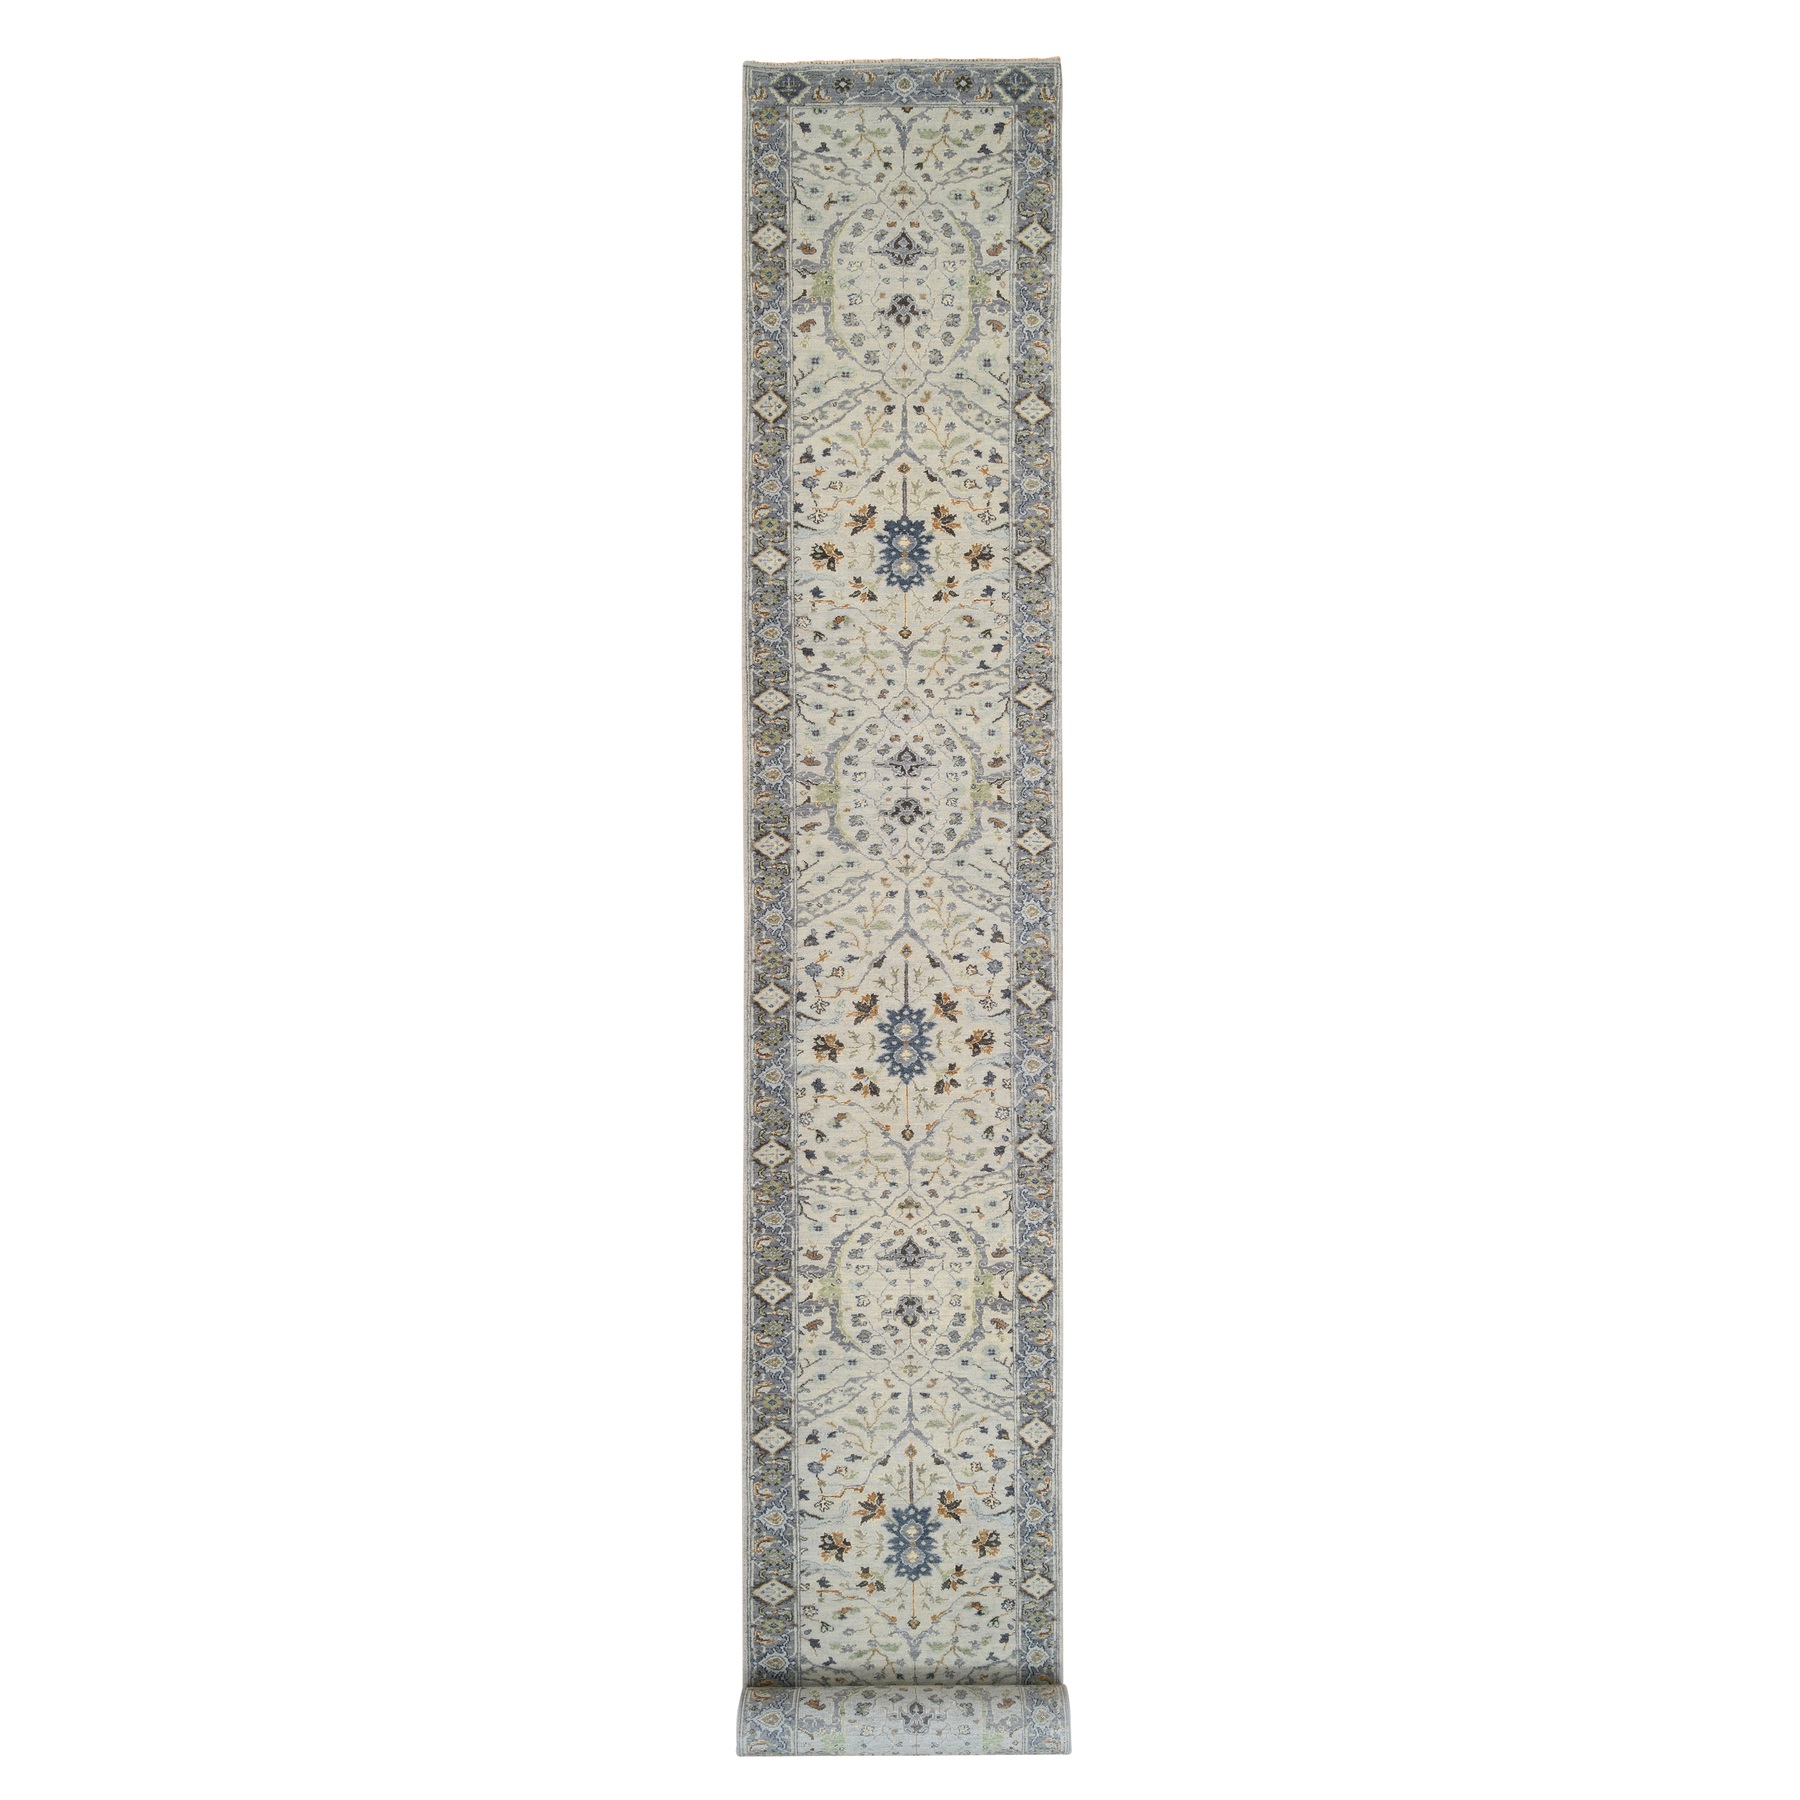 2'7"x22' Light Gray with Denser Weave Oushak, Floral Motifs, Hand Woven, Organic Wool Oriental XL Runner Rug 